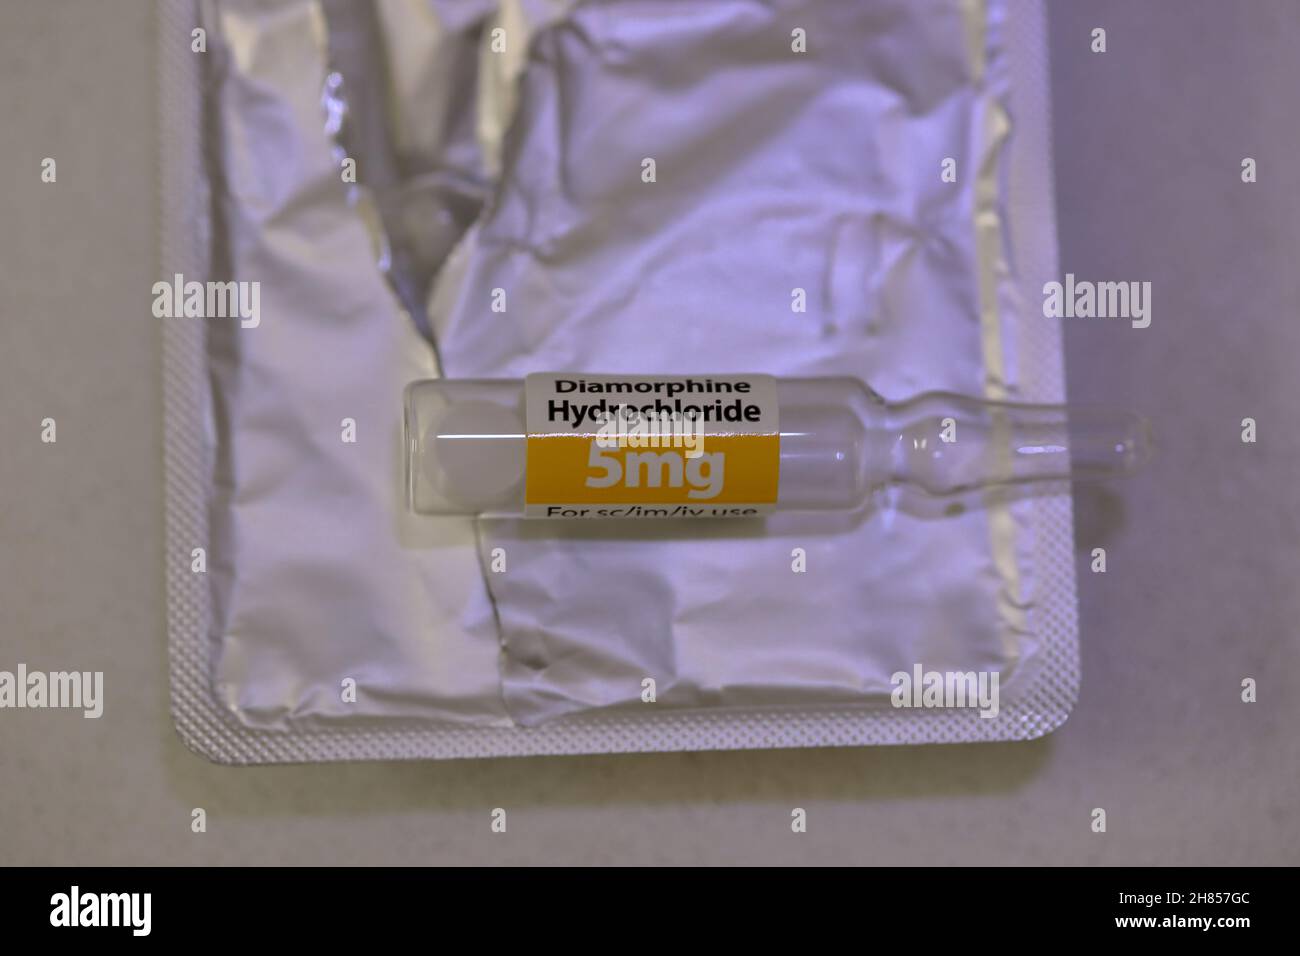 Eine Glasampulle, die 5mg Diamorphin-Hydrochlorid (Heroin) als Pulver enthält, auf einer Packung mit 5 anderen Ampullen Stockfoto